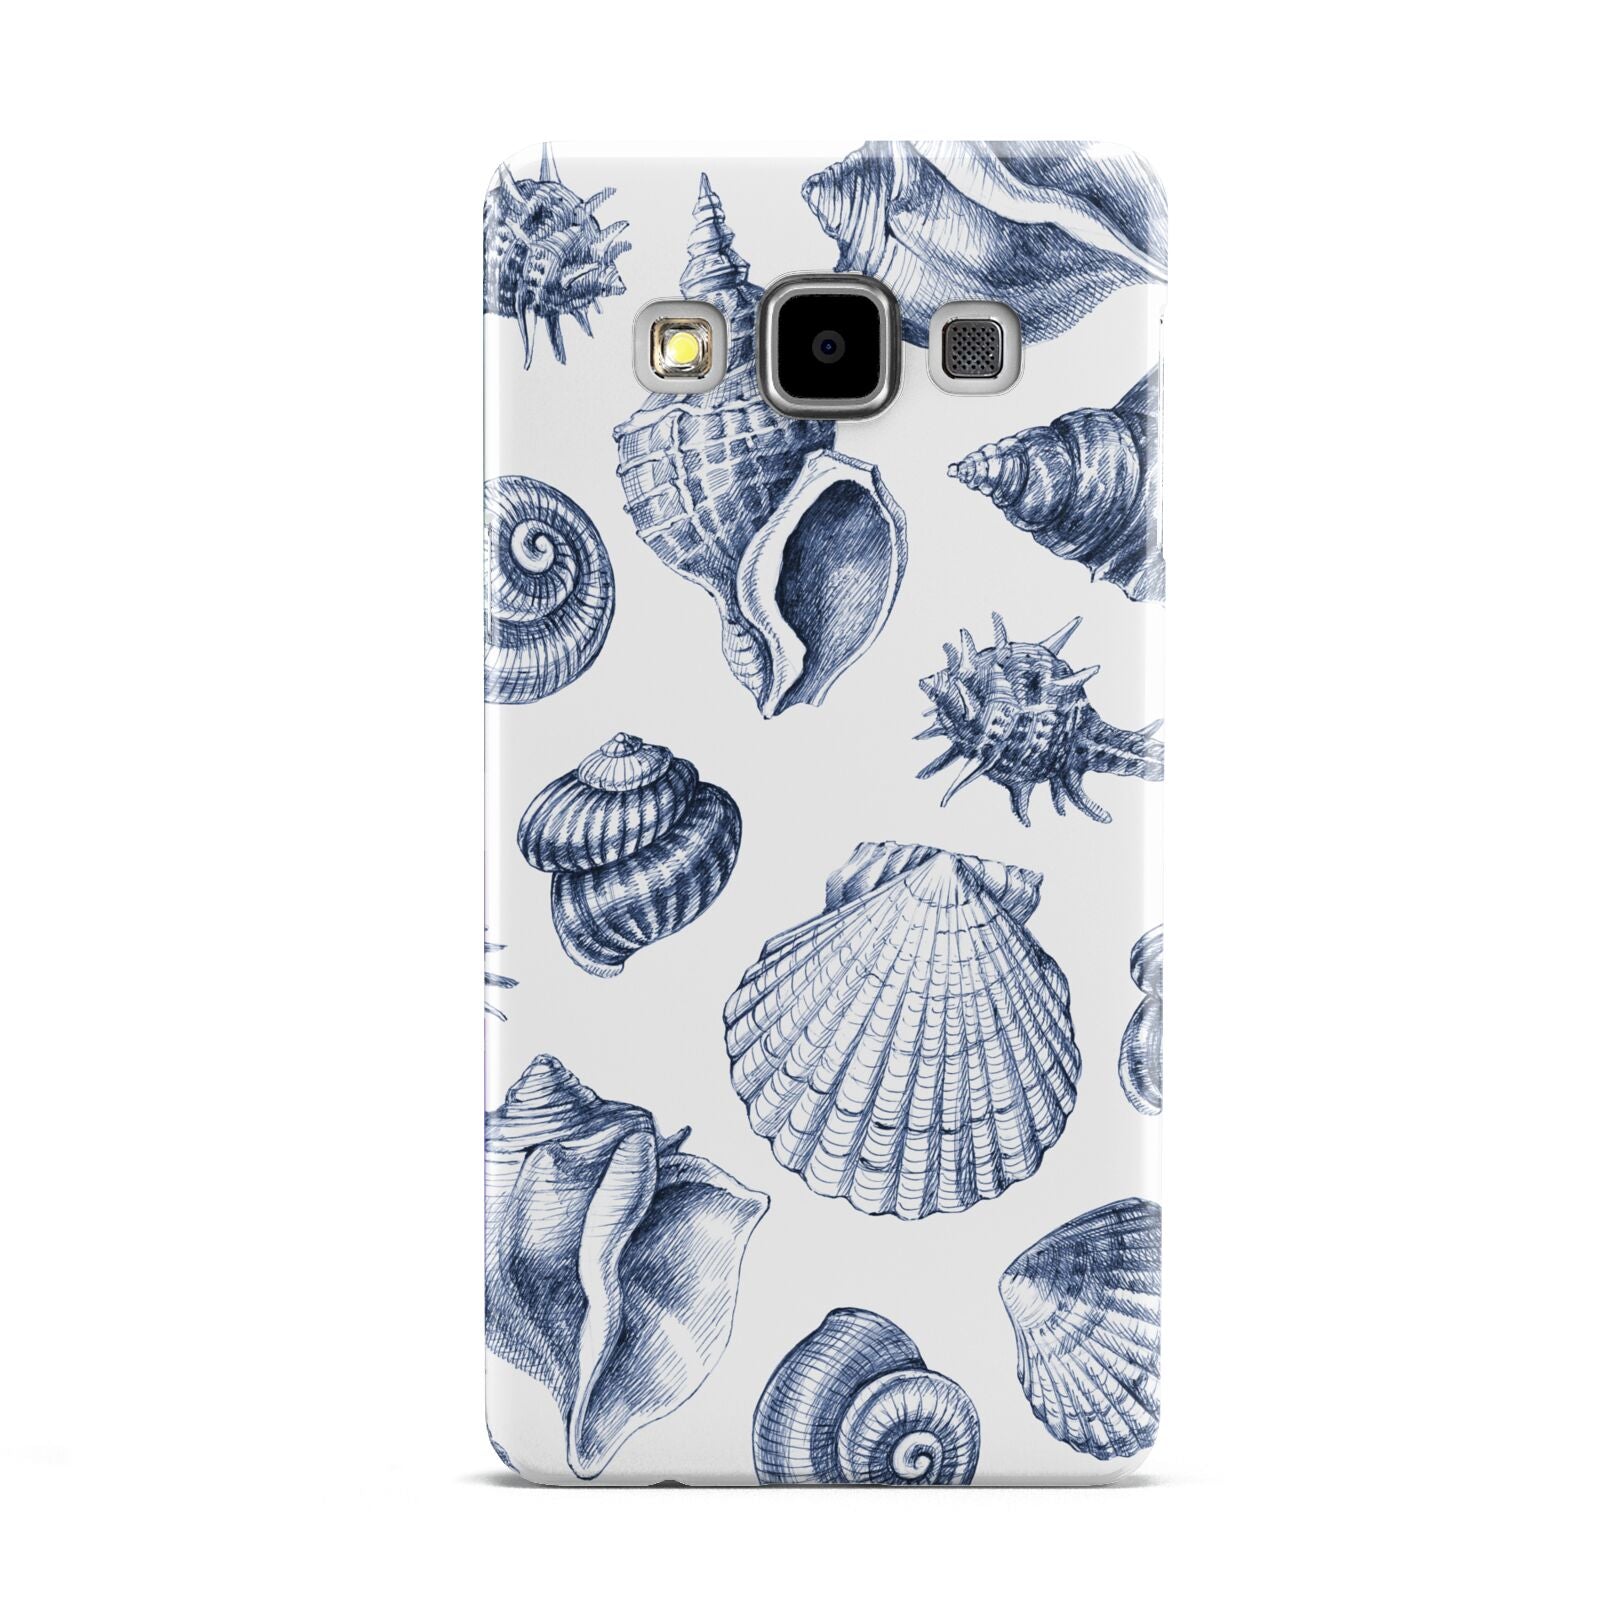 Shell Samsung Galaxy A5 Case